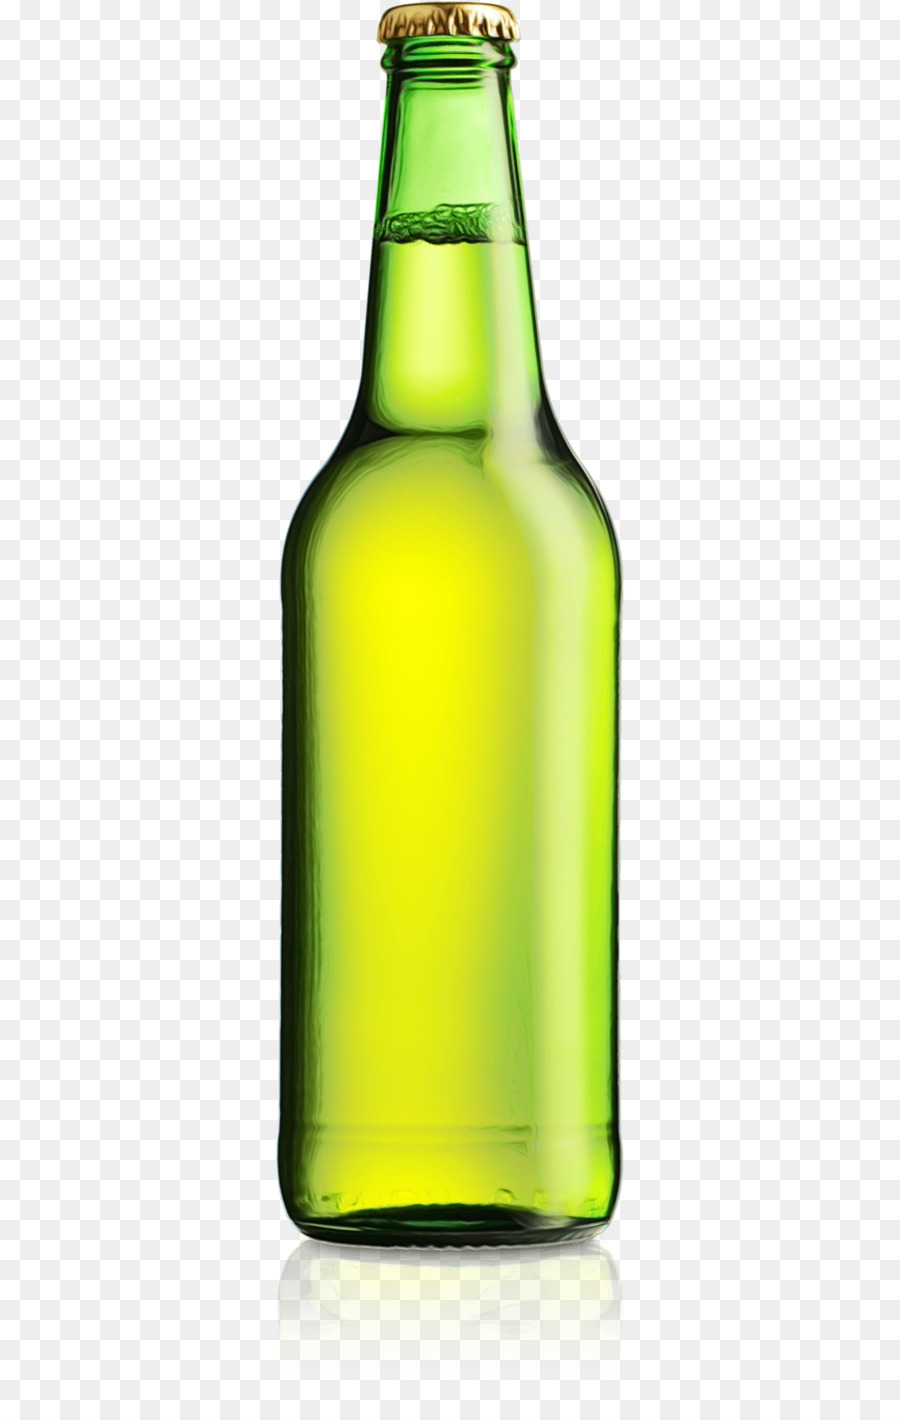 chai thủy tinh màu xanh lá cây chai bia uống - 